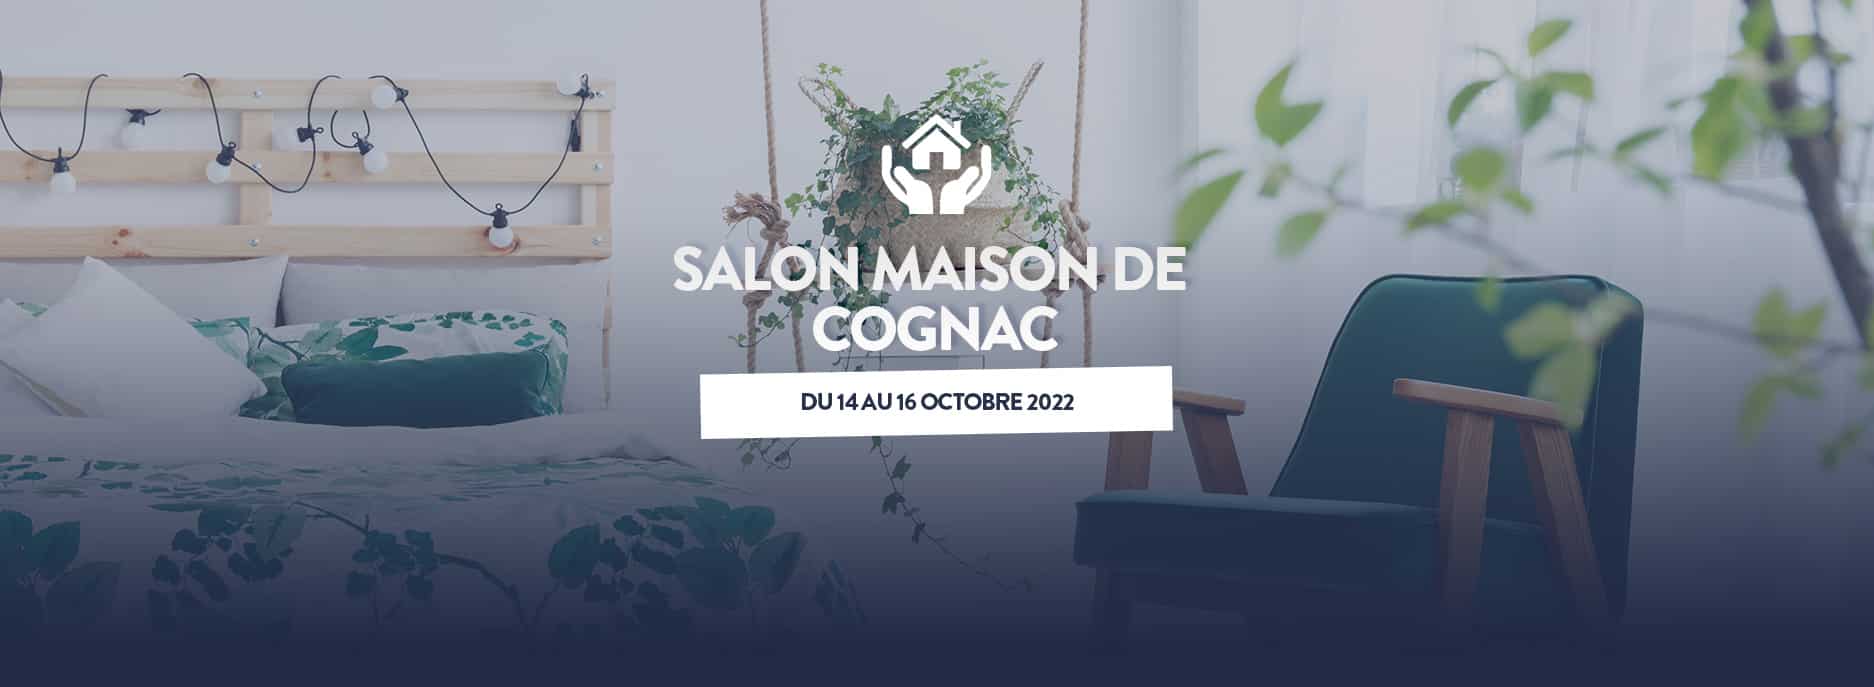 Salon Maison de Cognac du 14 au 16 octobre